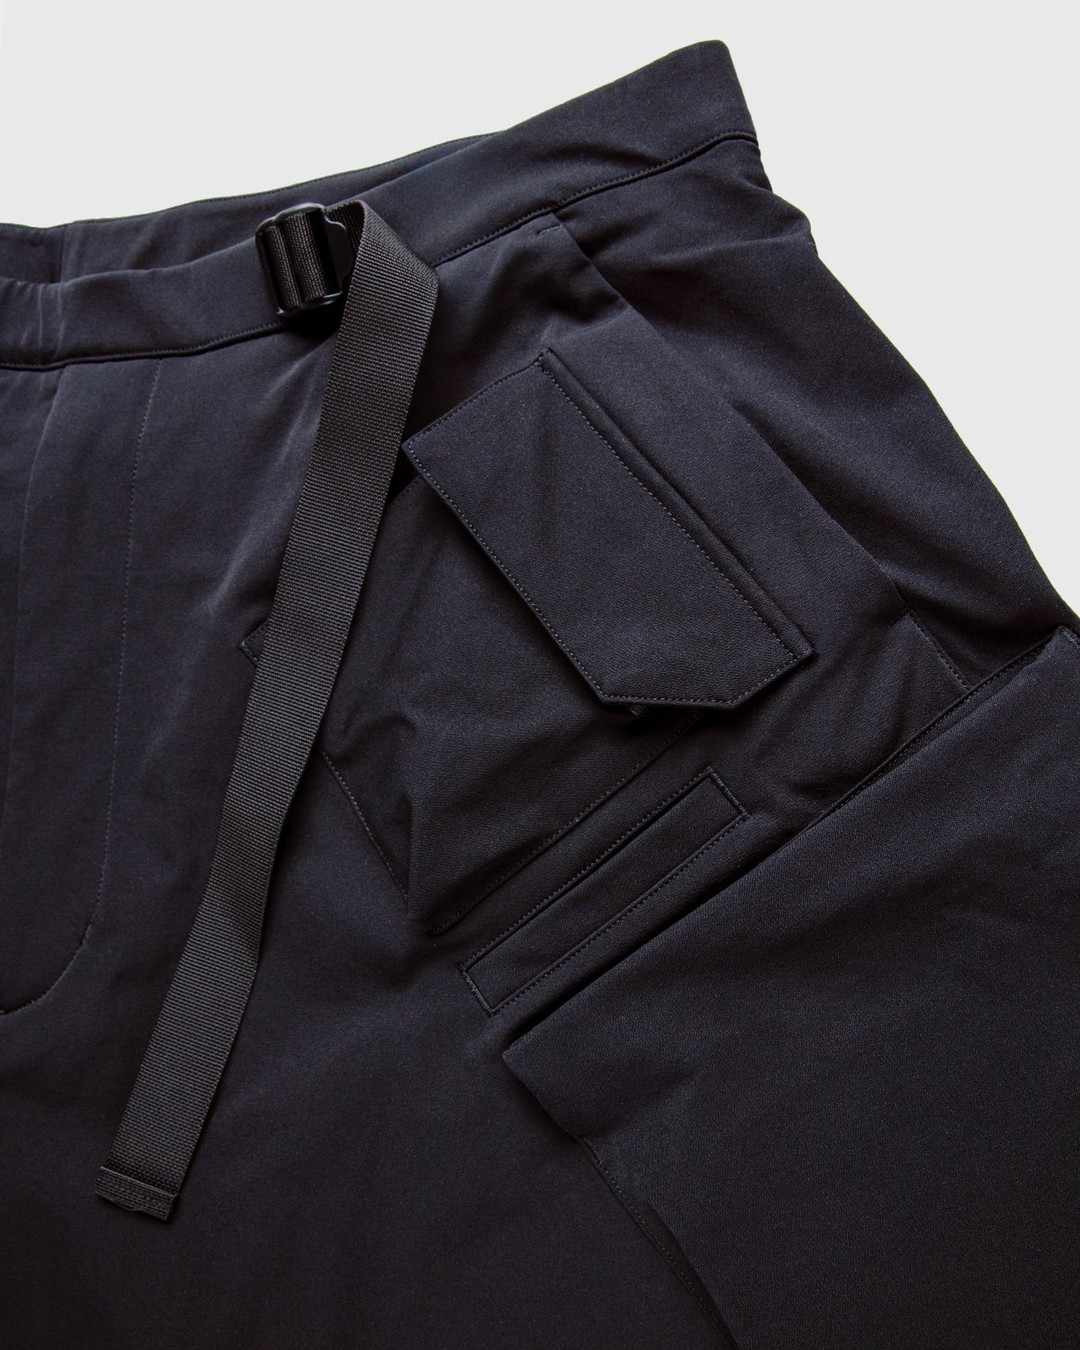 ACRONYM – P30A-DS Pants Black - Active Pants - Black - Image 5